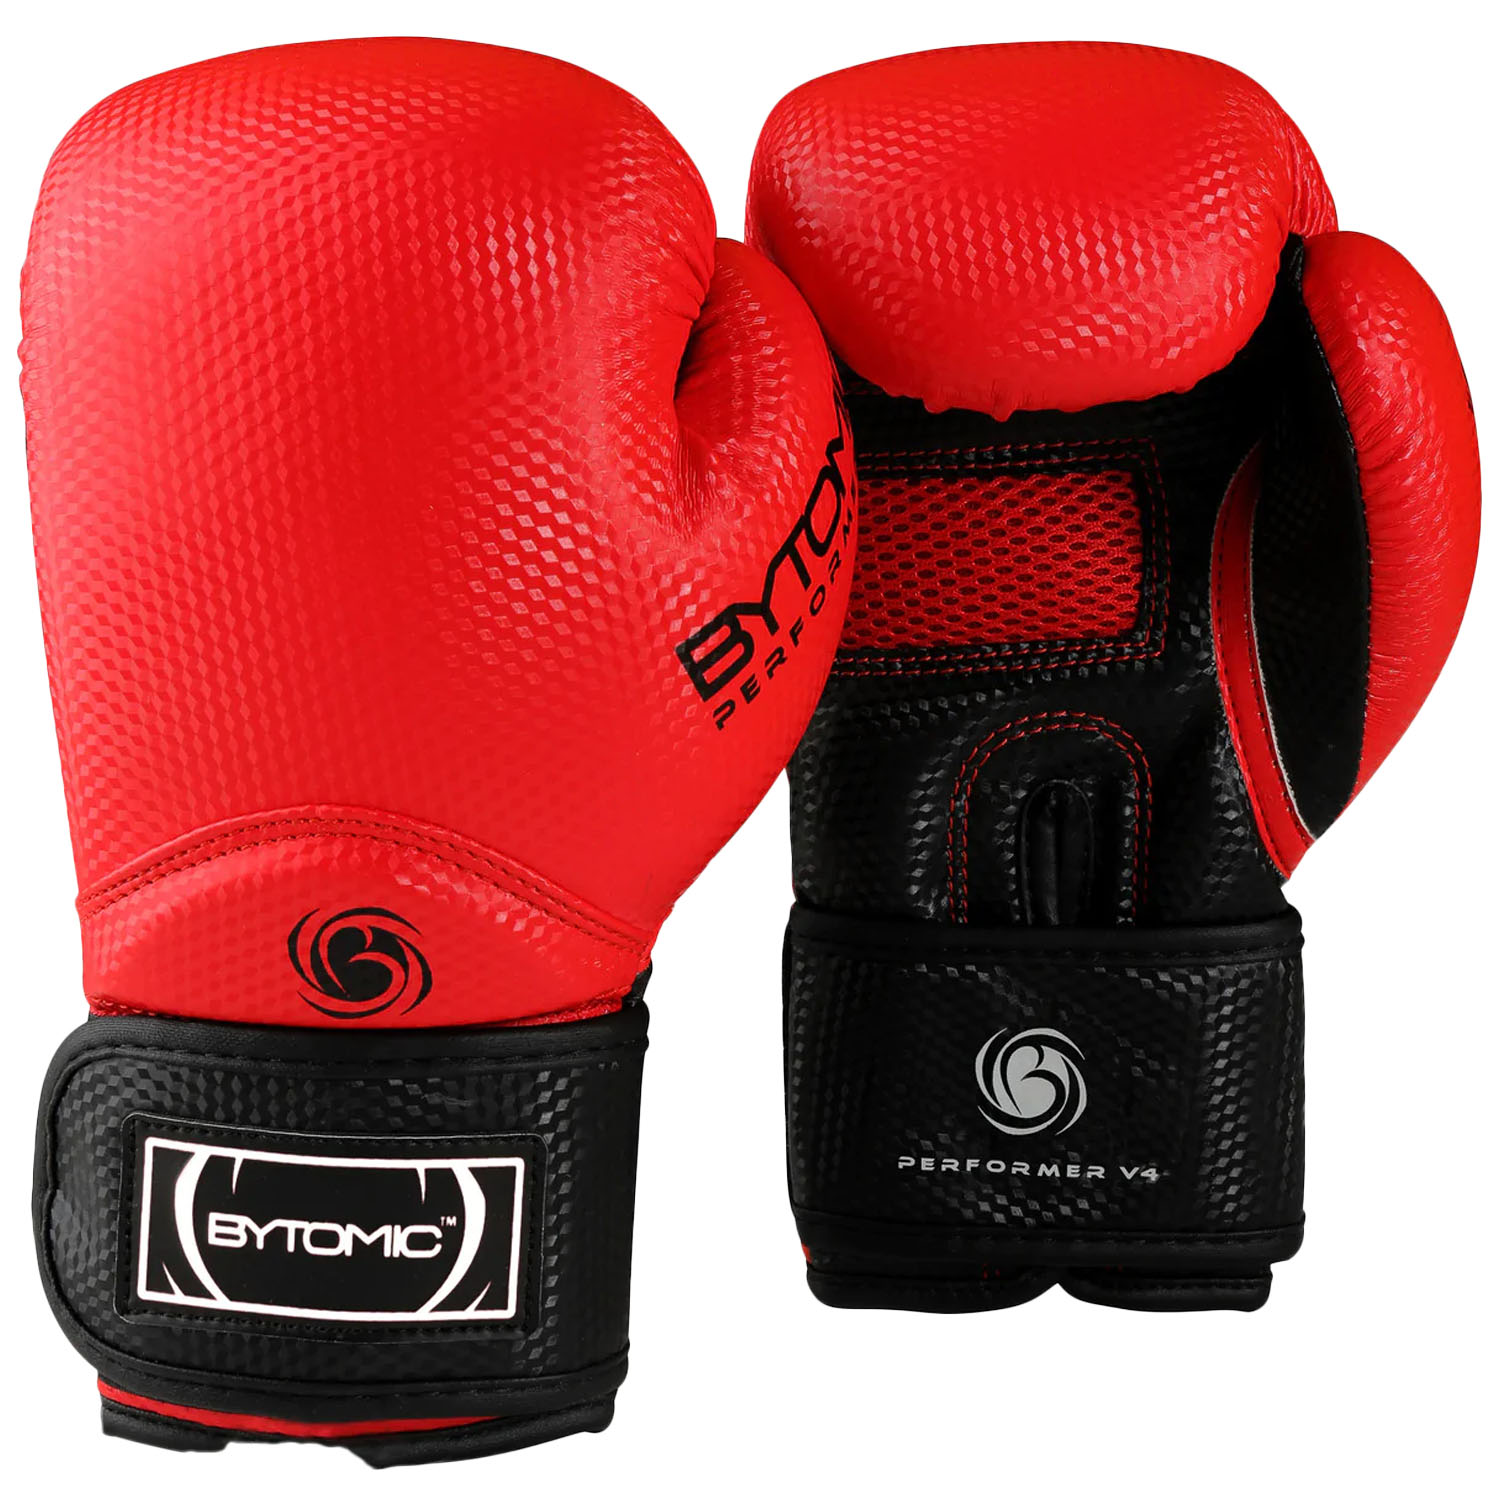 Bytomic Boxing Gloves, Performer, V4, rot, 14 Oz